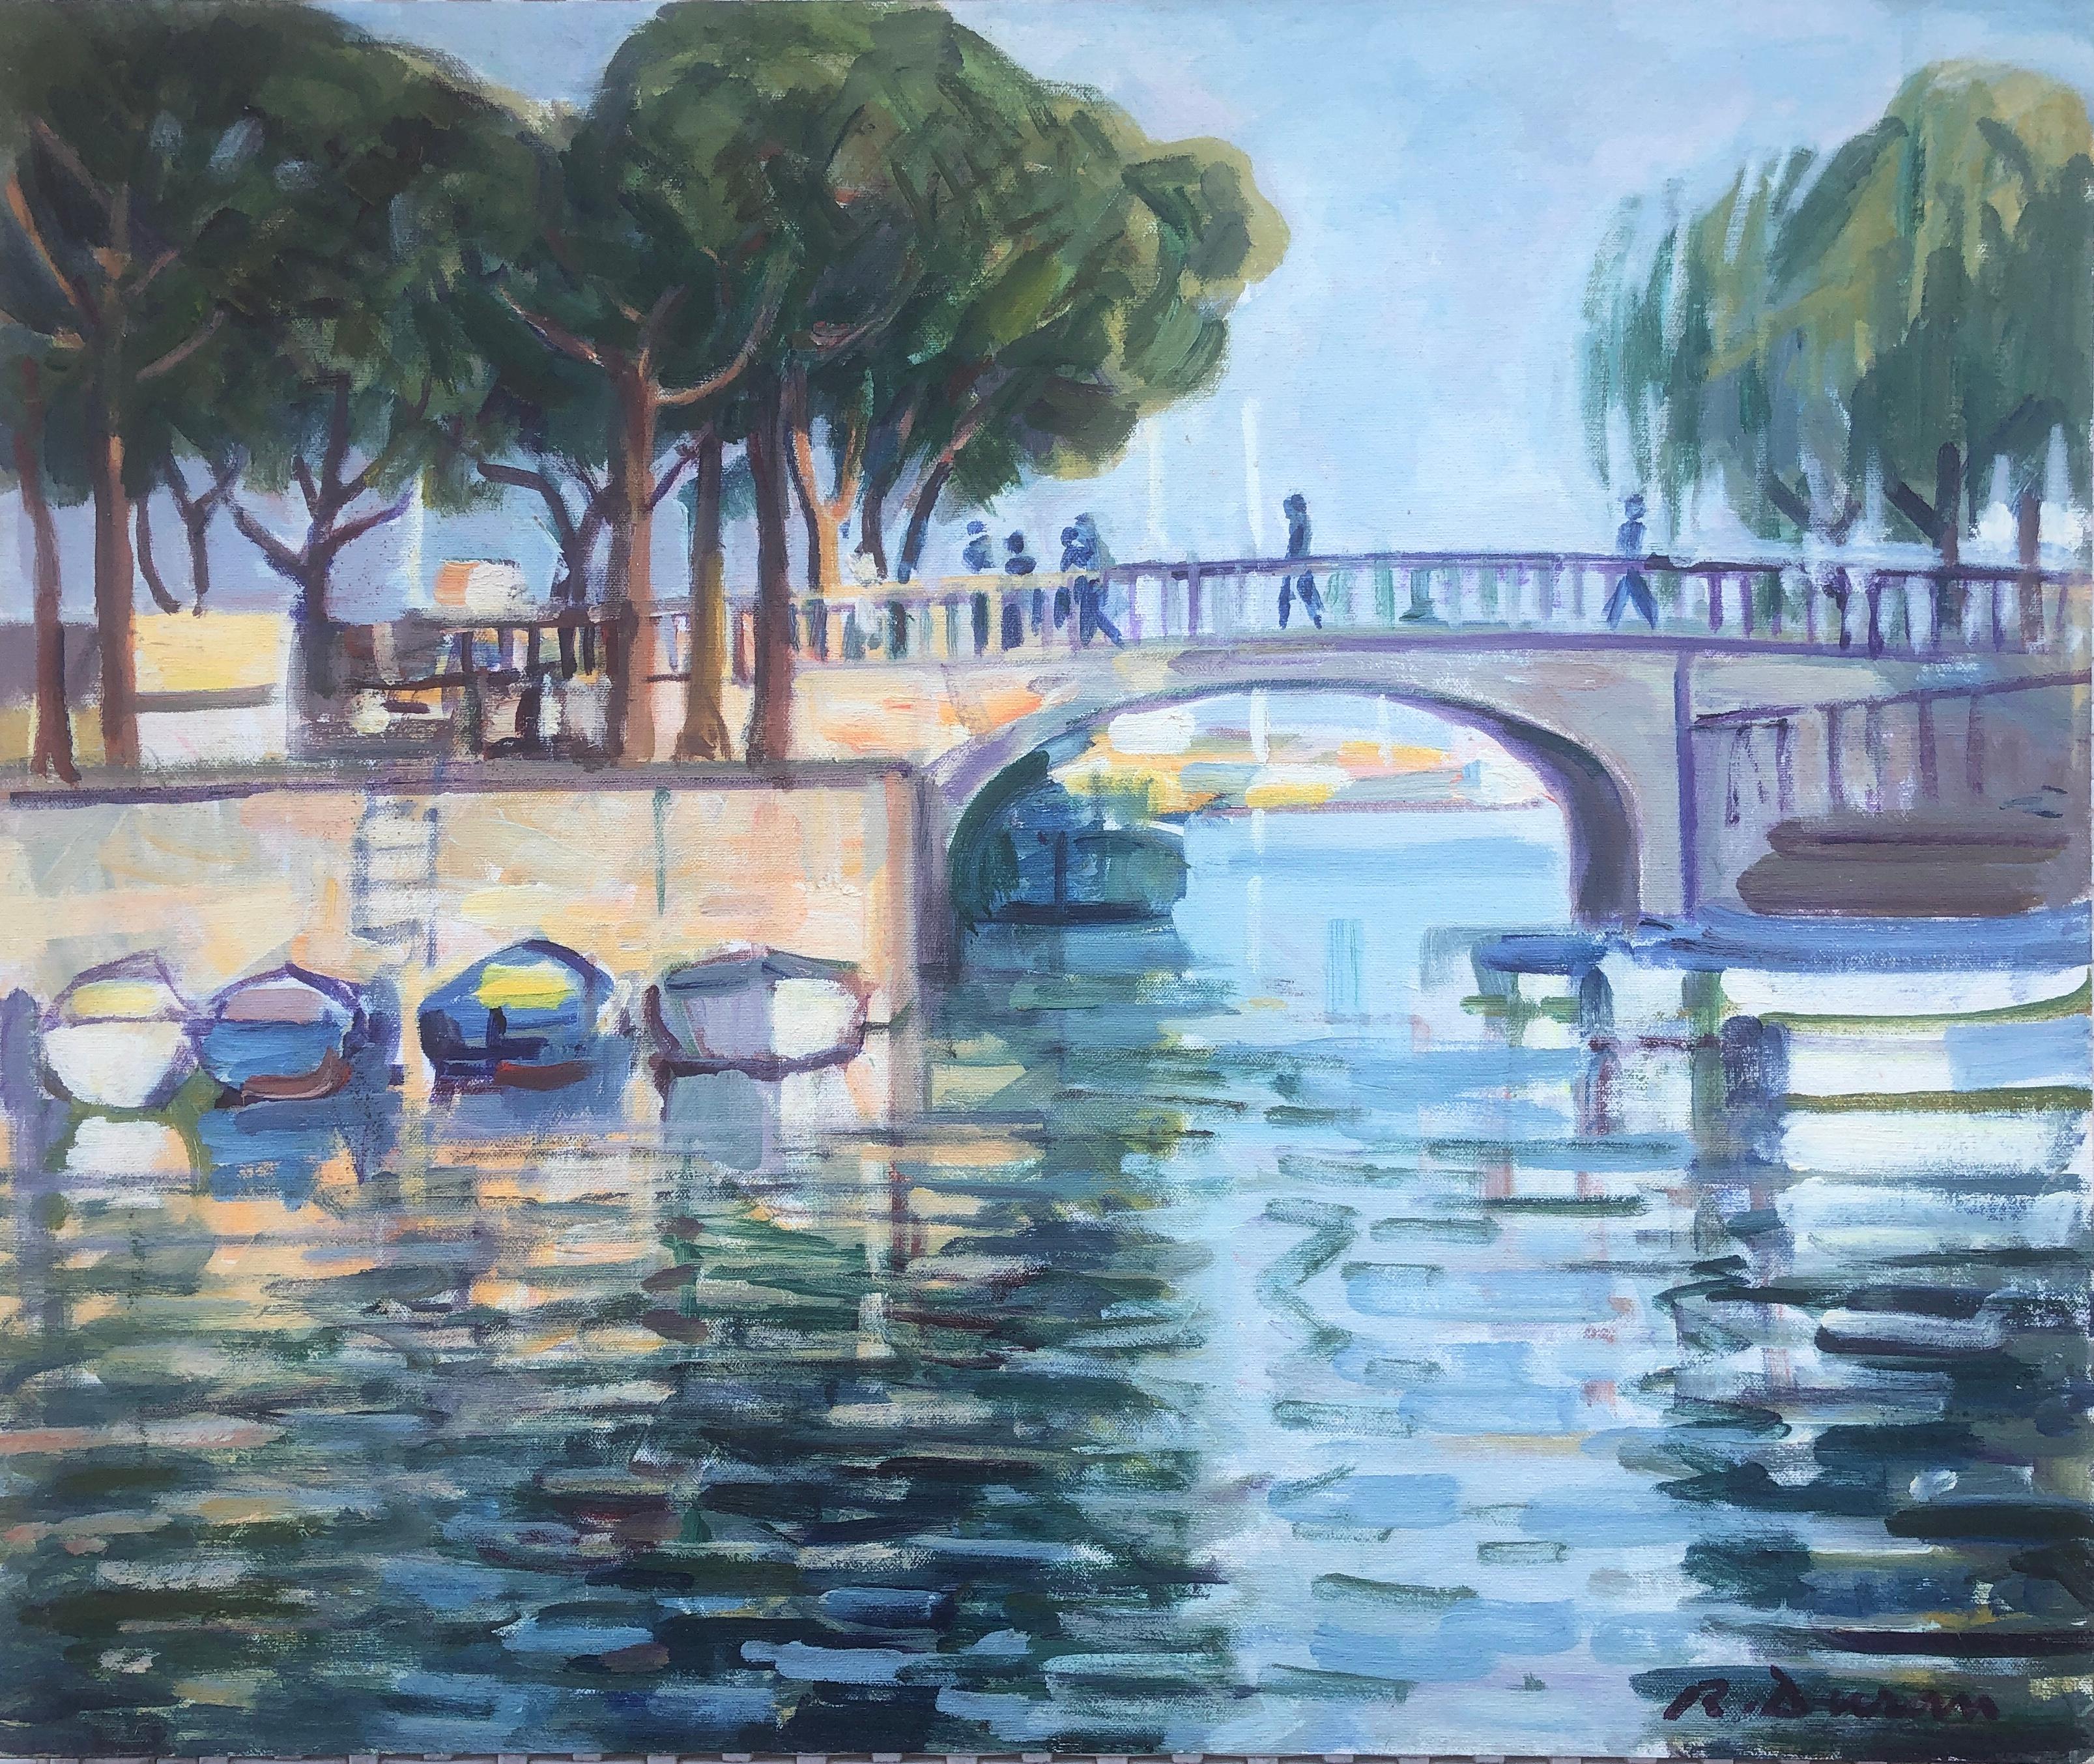 Figurative Painting Rafael Duran Benet - Rivière avec pont France peinture à l'huile paysage marin paysage français